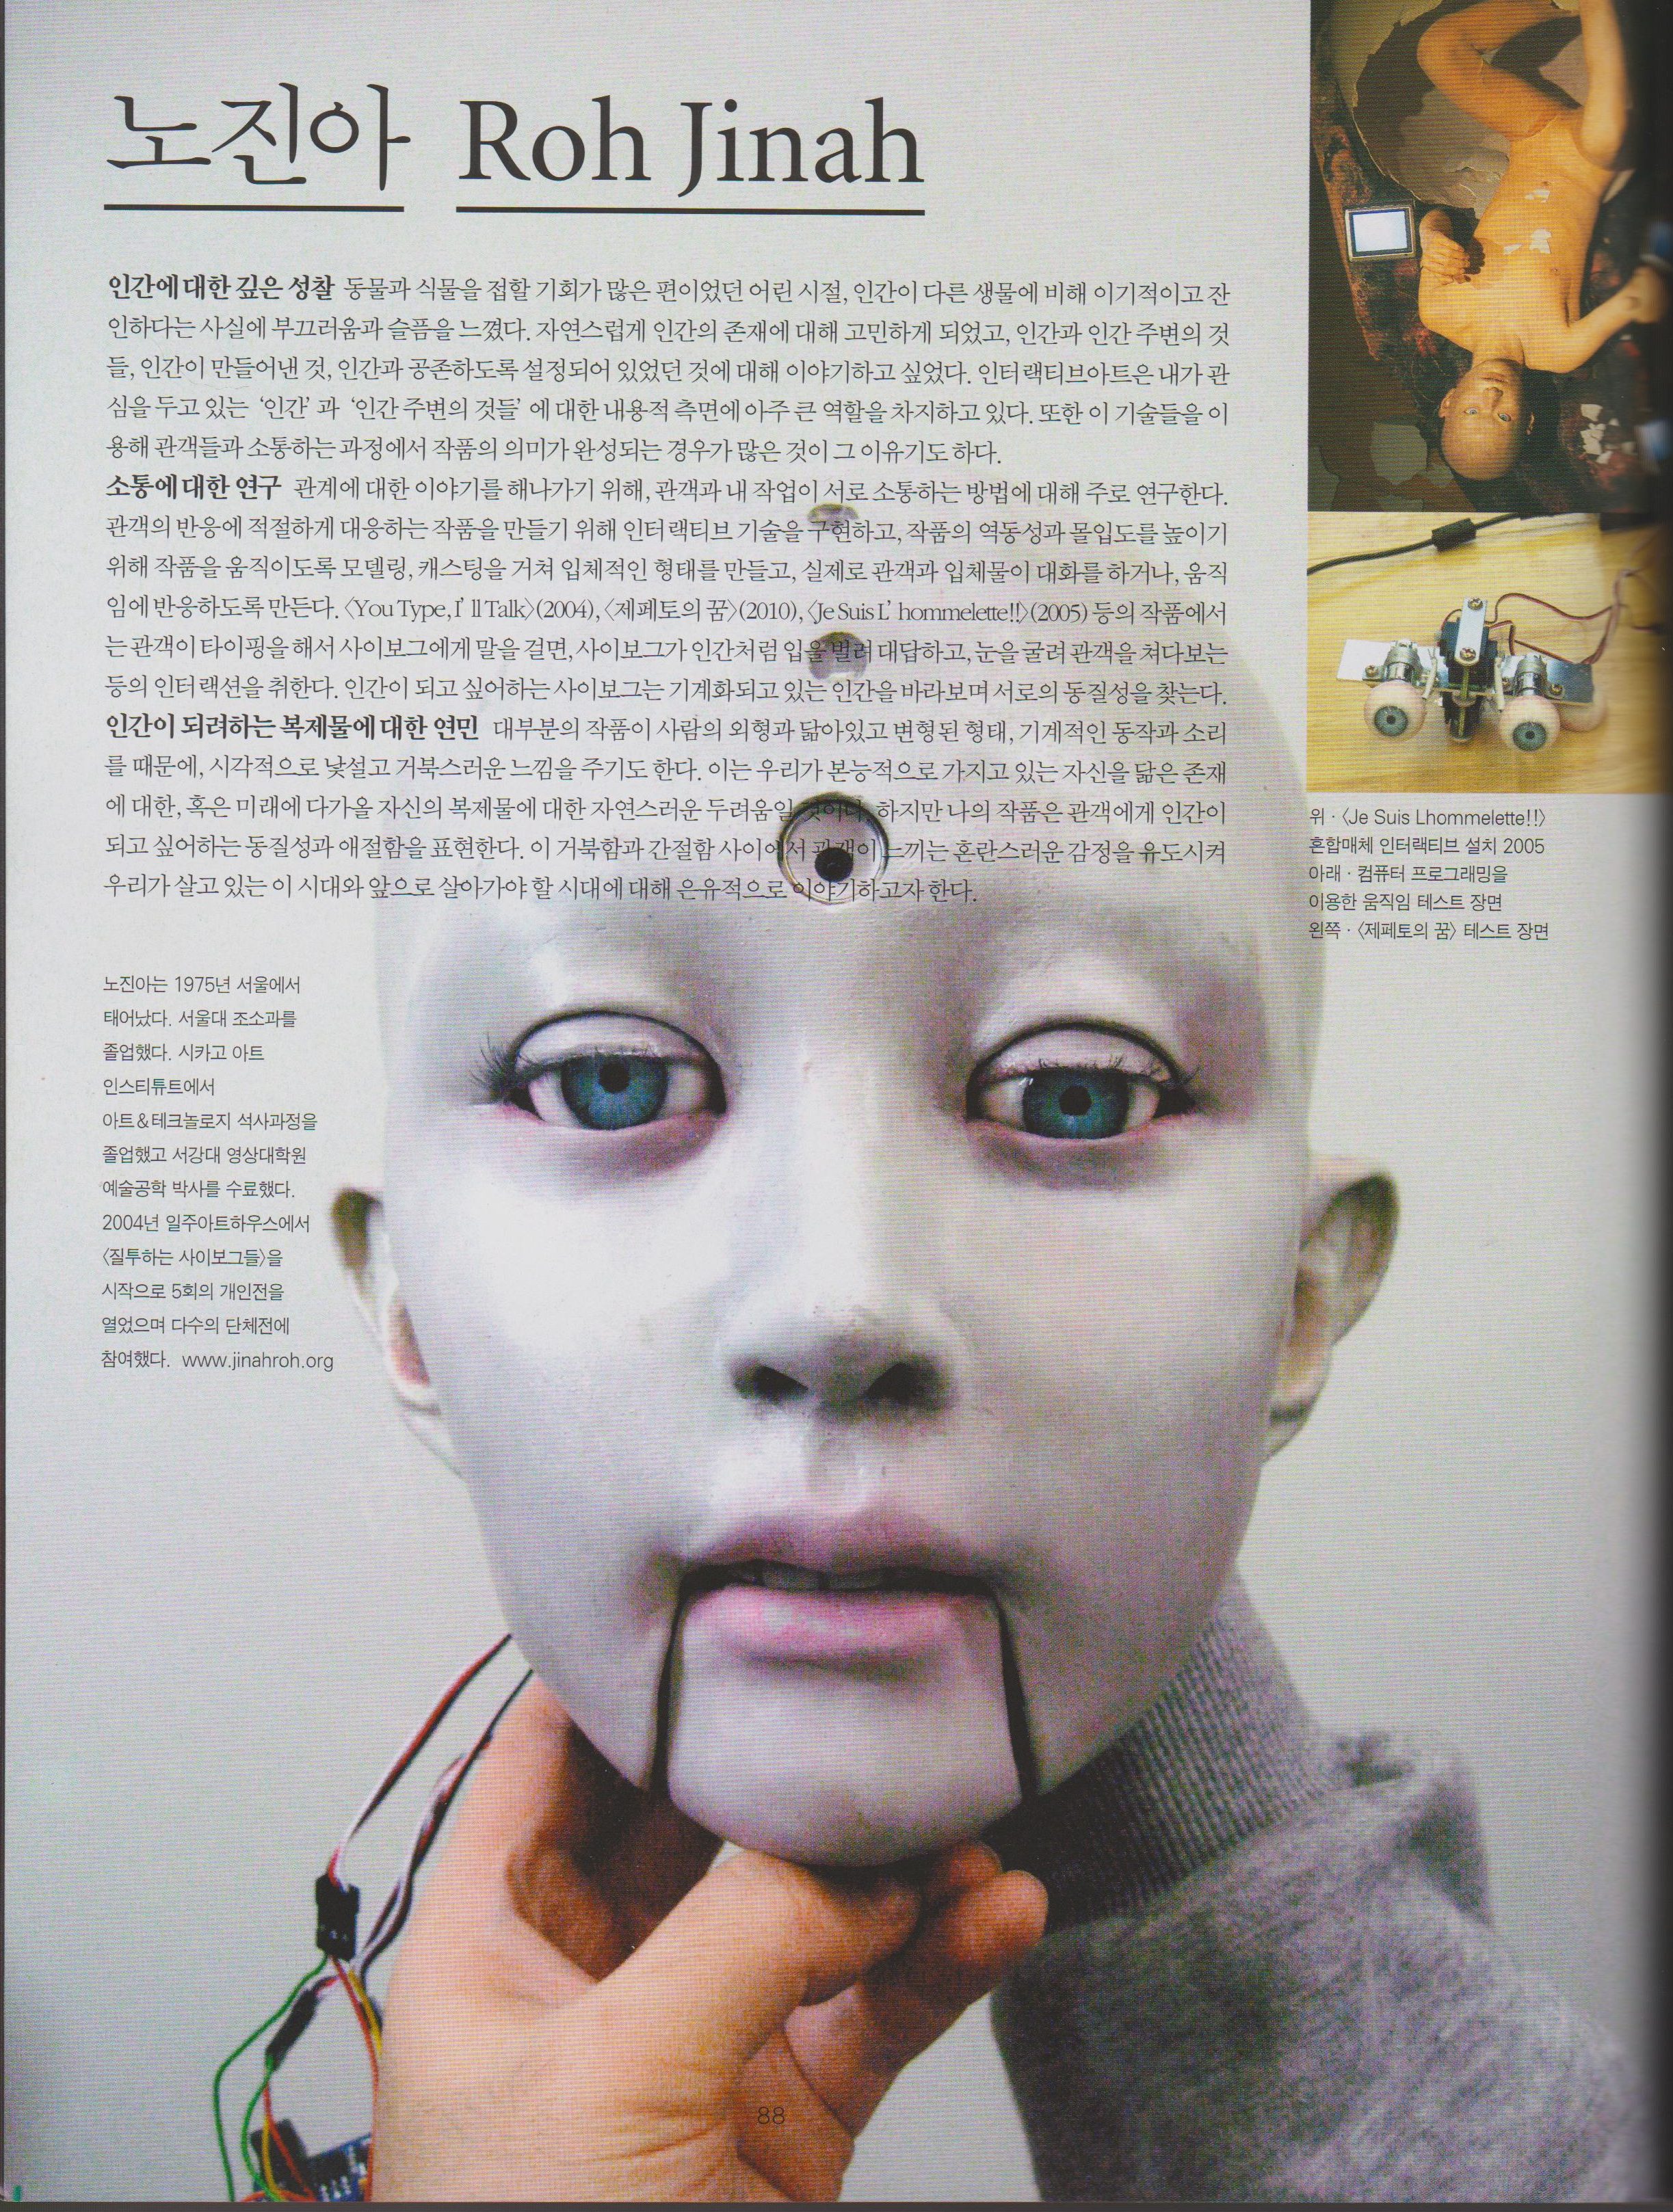 2011.12 월간미술 “한국뉴미디어아트의 스펙트럼” – 노진아